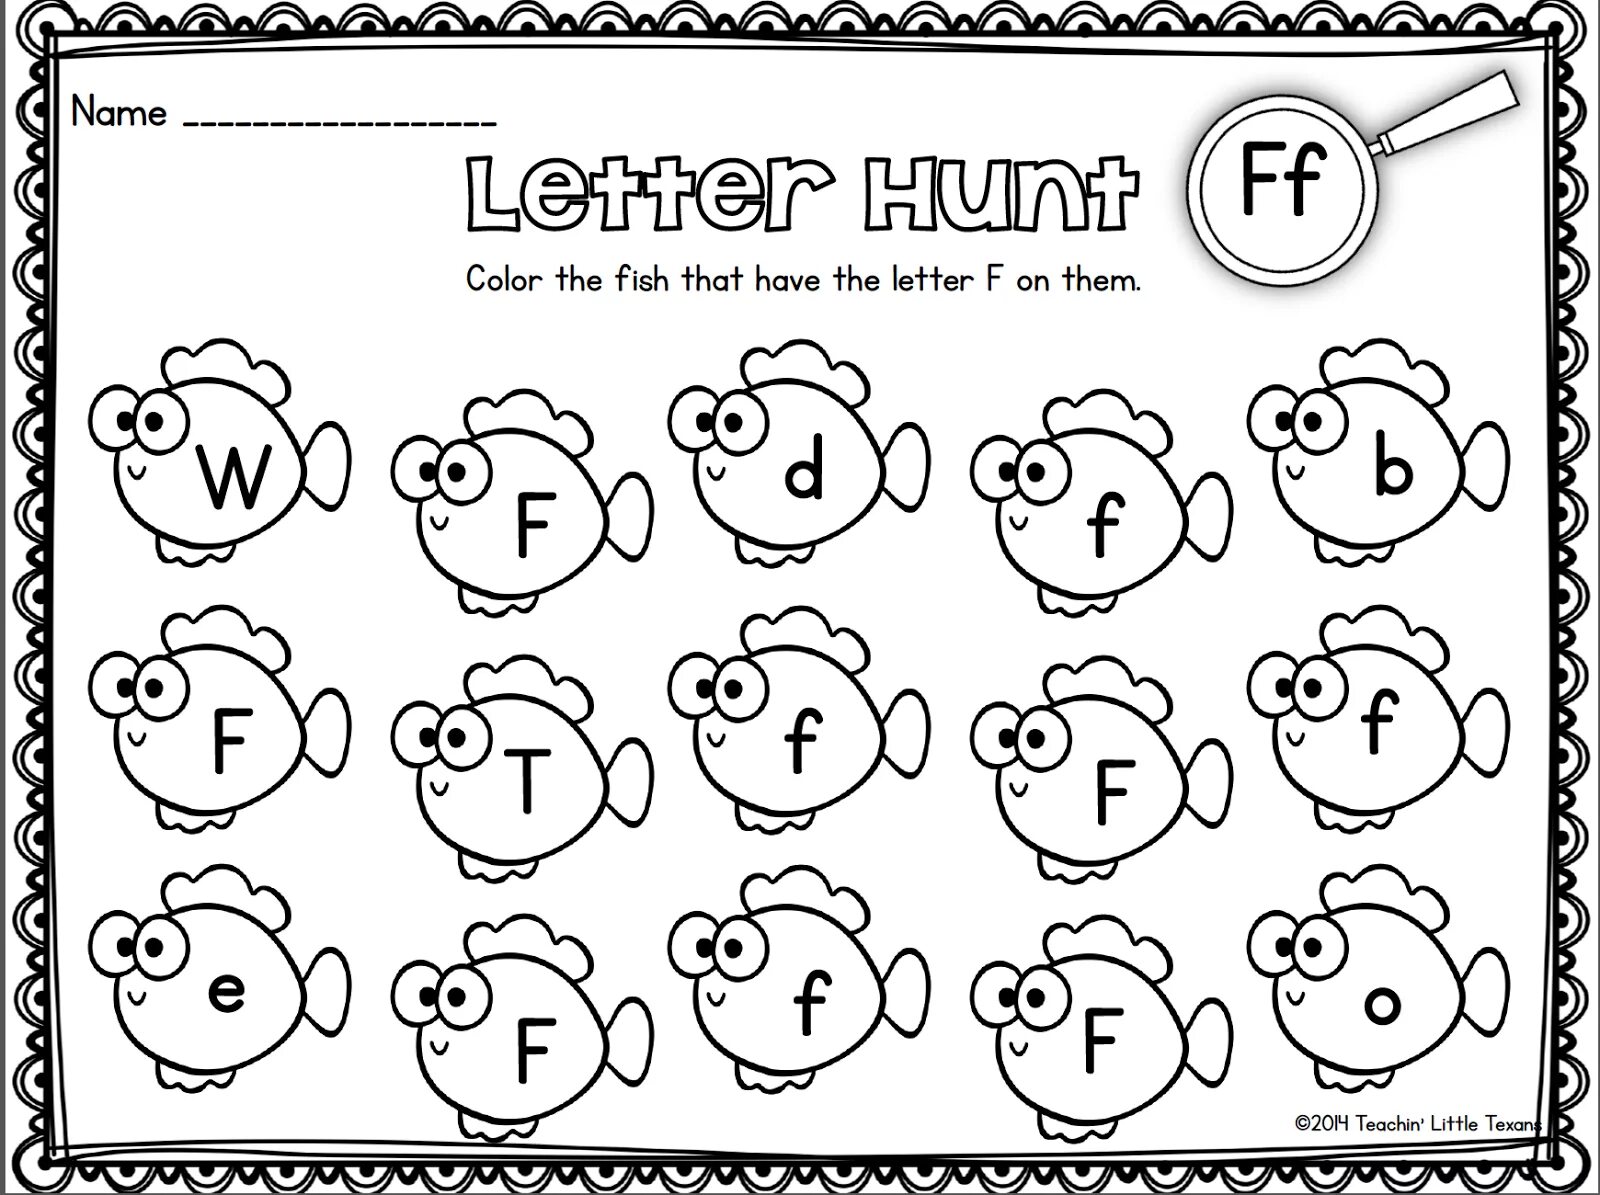 Find c v. Задания на английскую букву f. Задания для дошкольников английский язык. Буква b задания. Letters задания для детей на букву f.